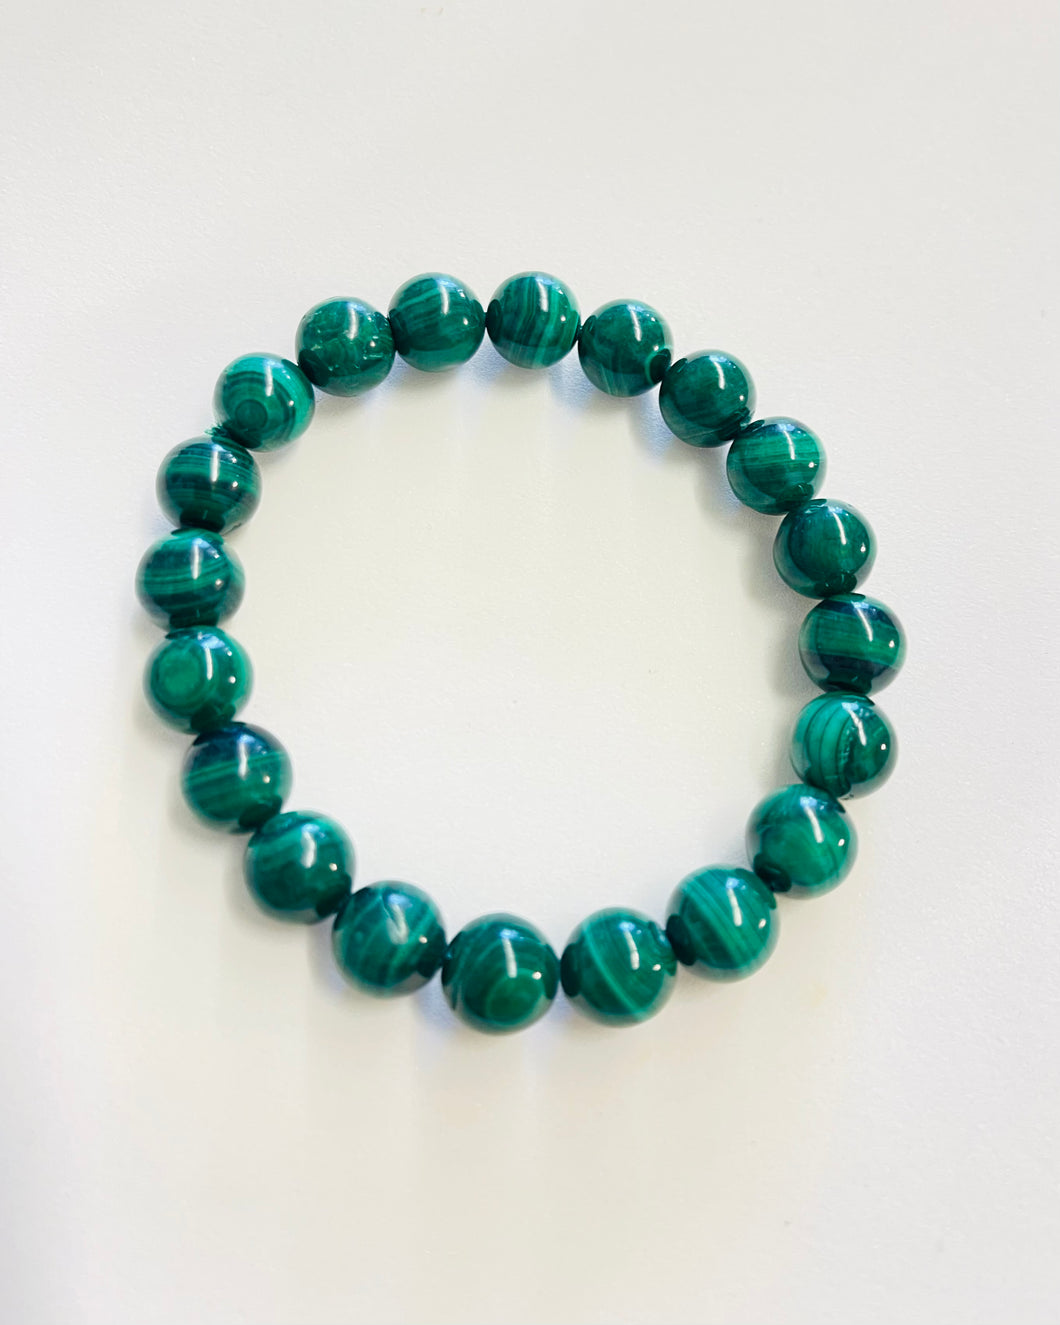 Bracelet with dark malachite  beads